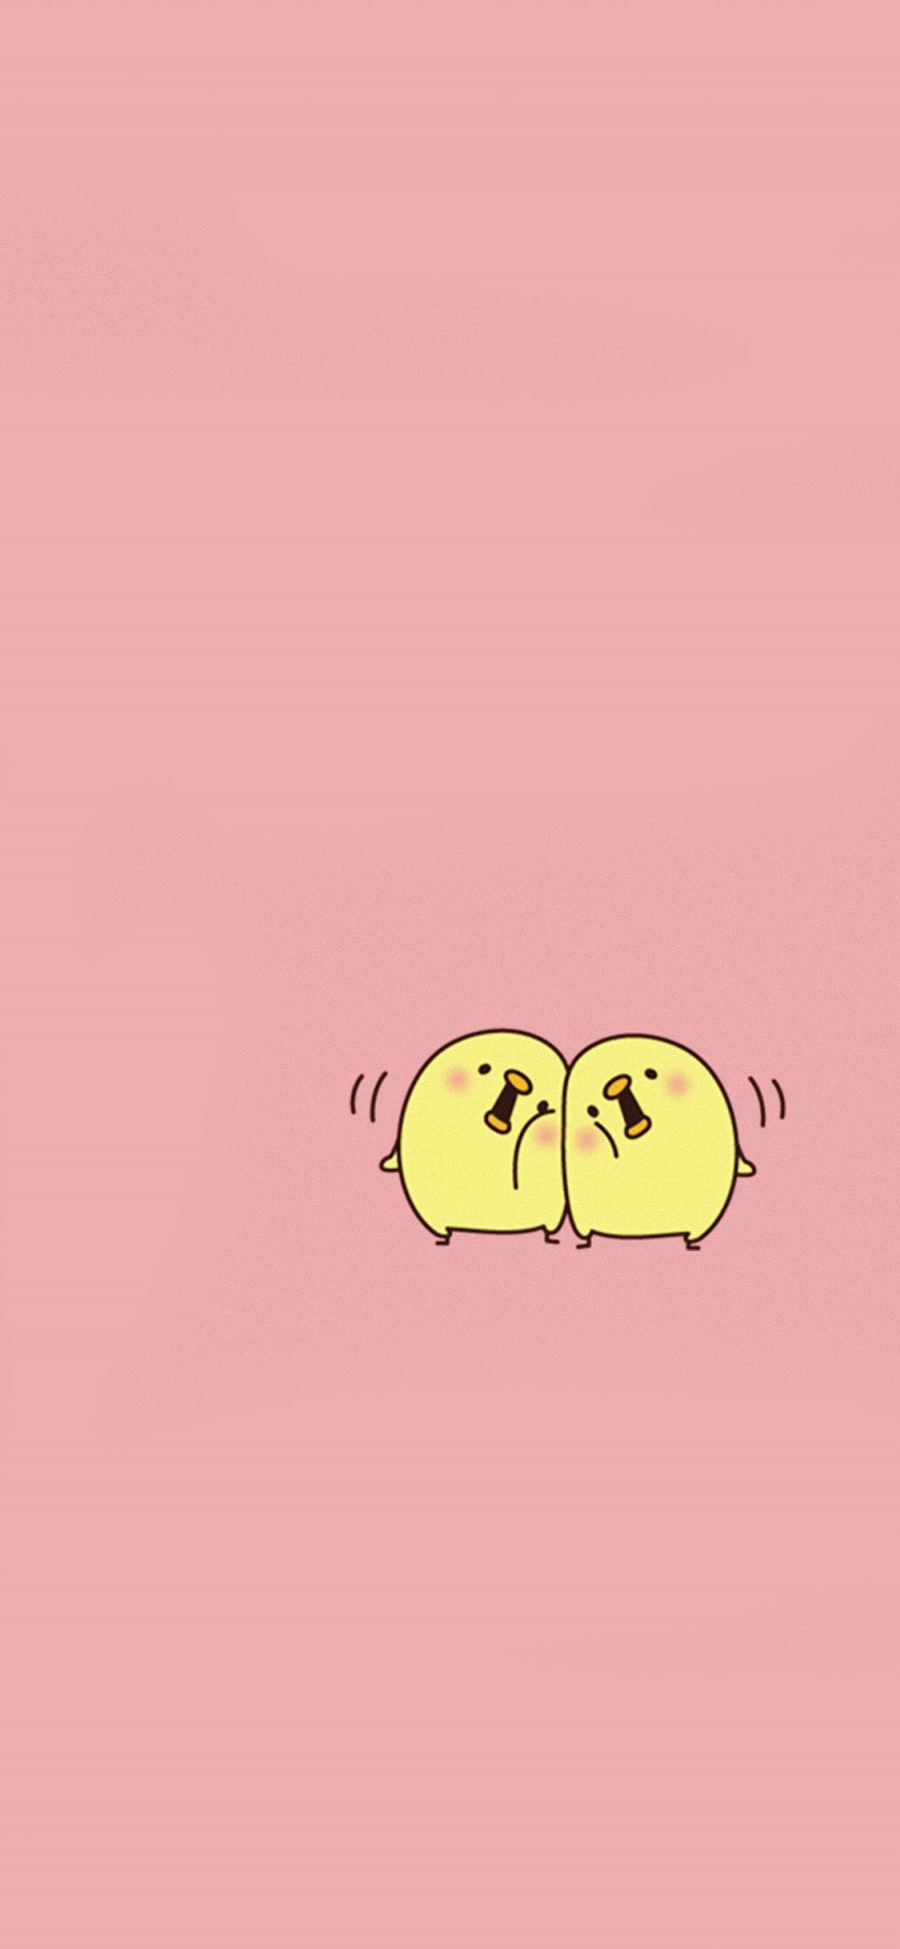 [2436×1125]小黄鸡 卡通 可爱 苹果手机动漫壁纸图片